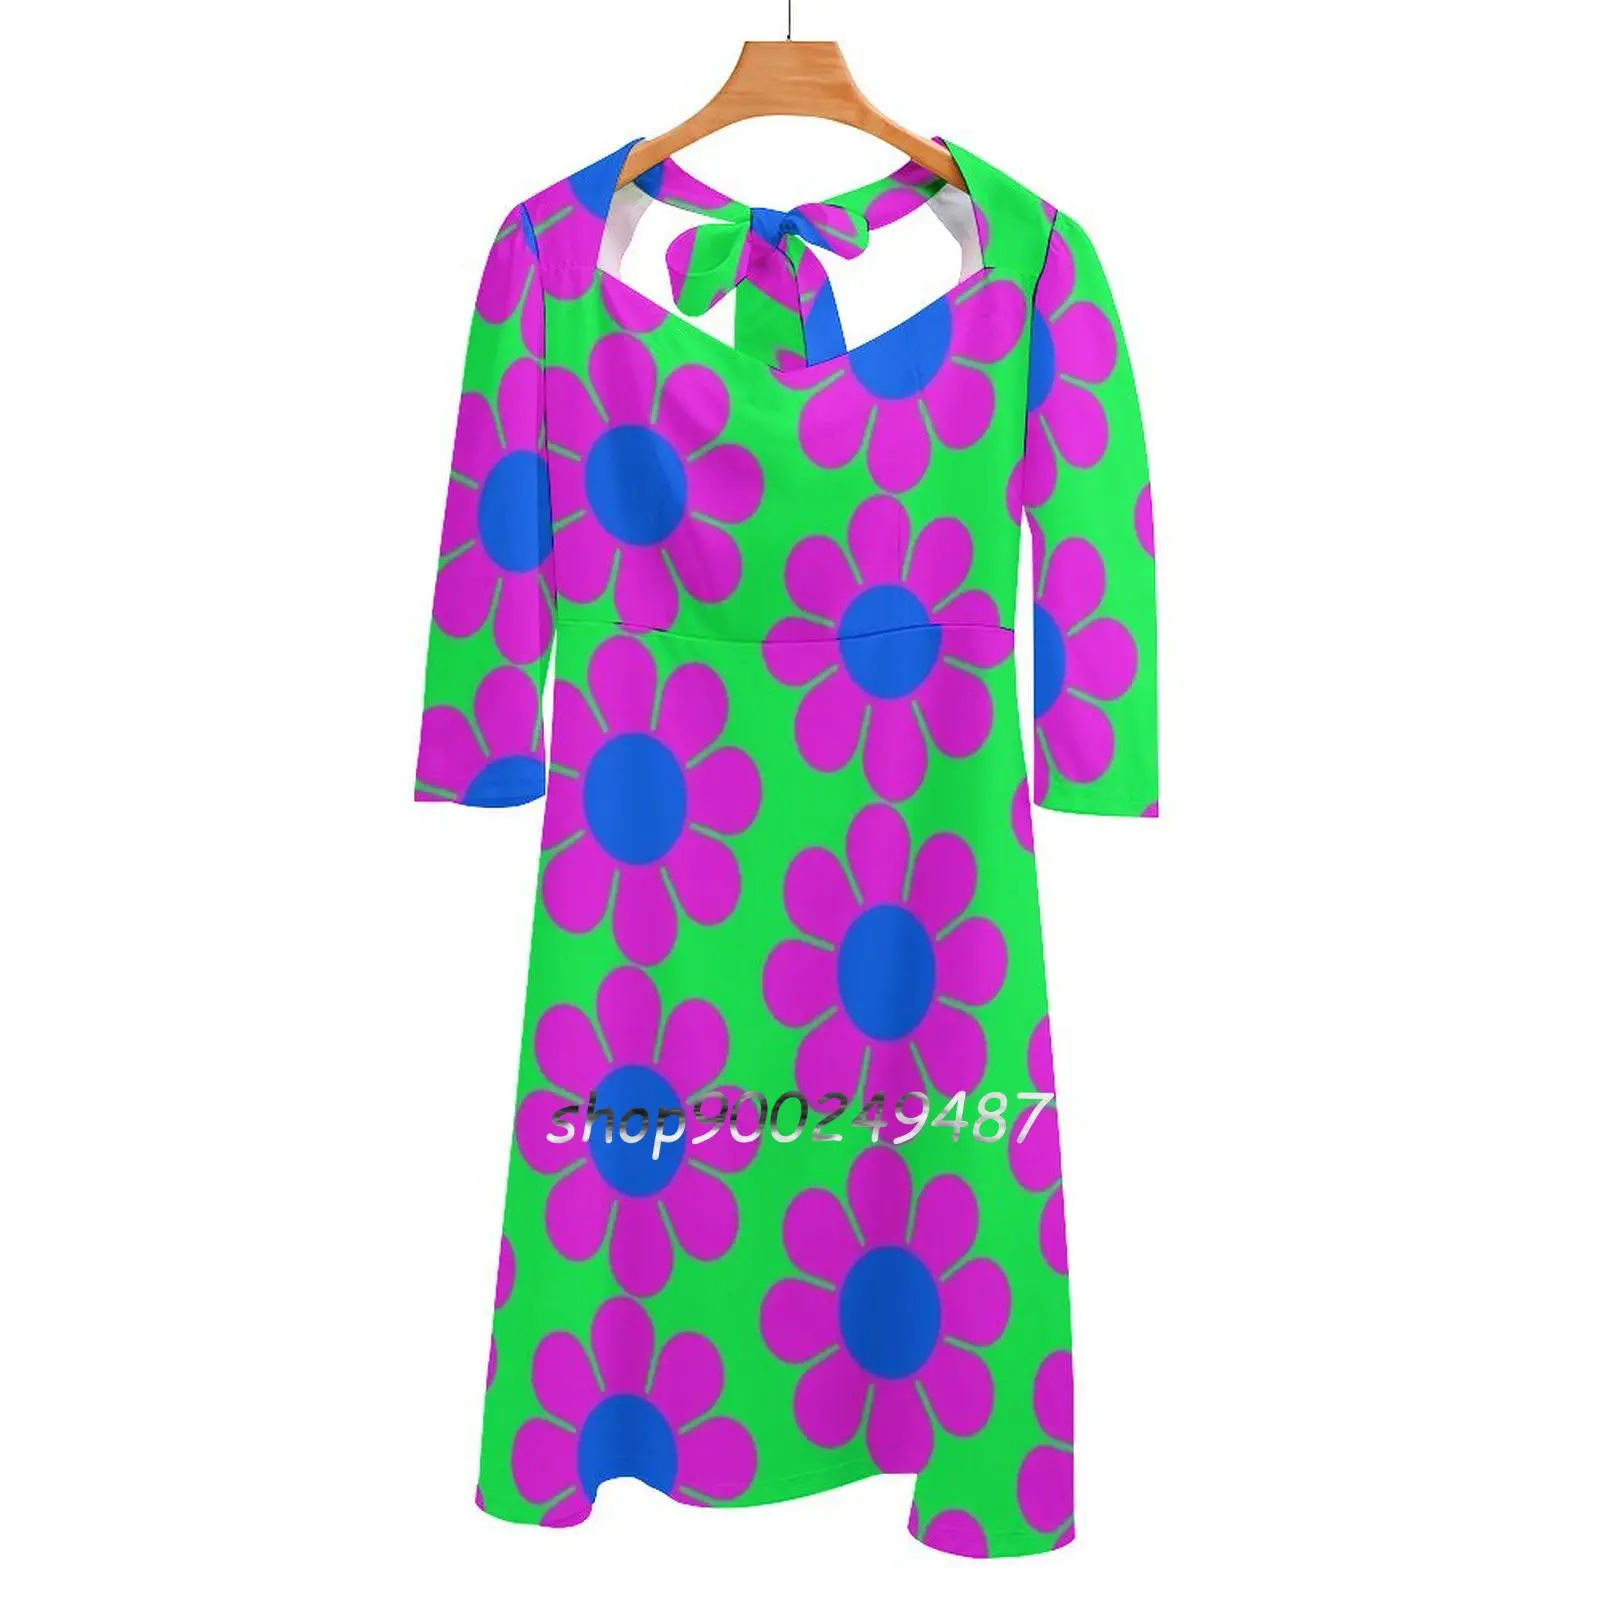 

Женское летнее платье с цветочным принтом, розовое, синее, фиолетовое платье с квадратным вырезом и лямкой на шее